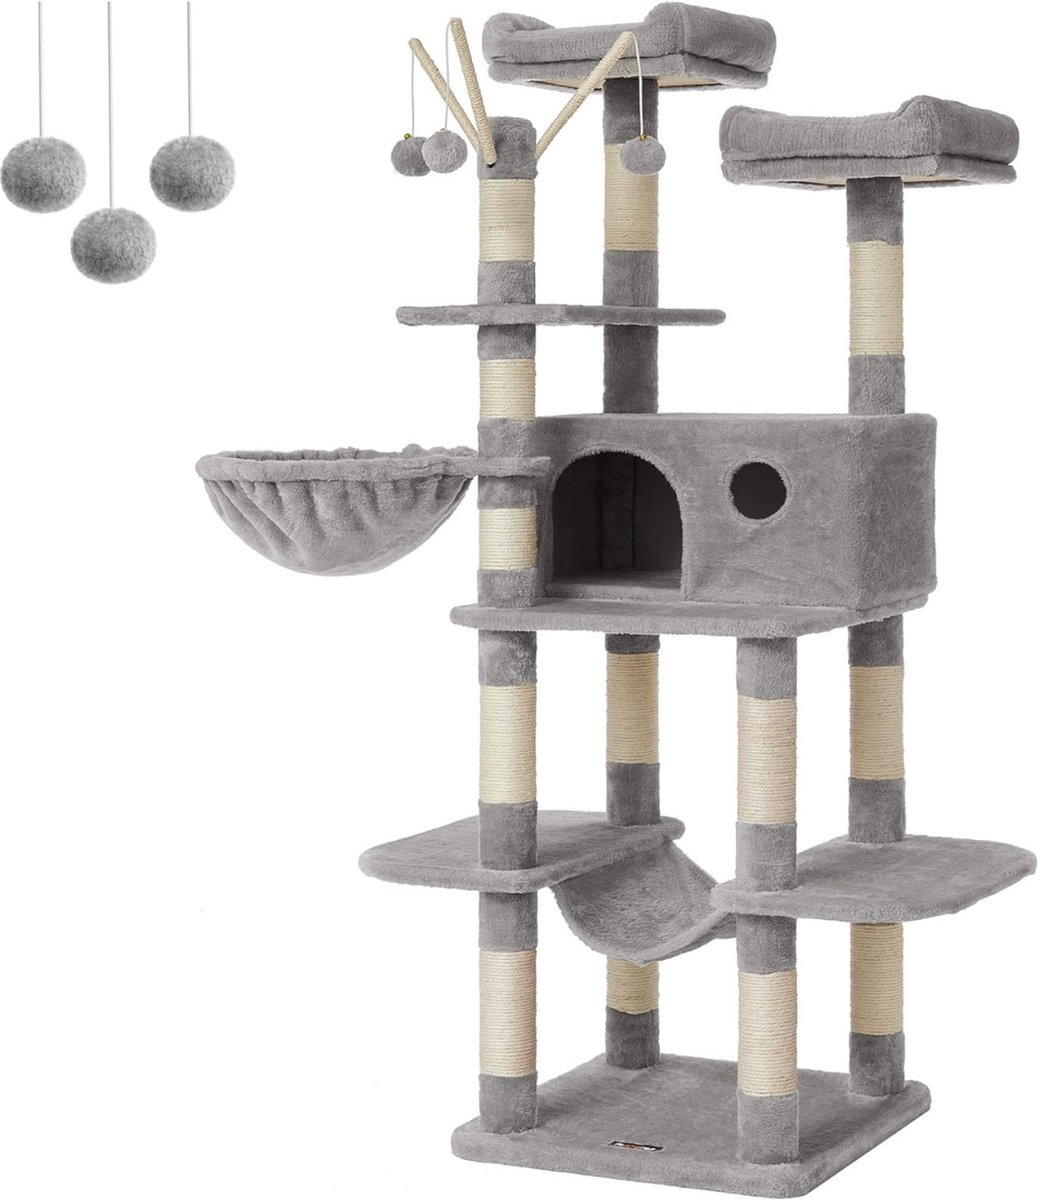 Krabpaal voor zware katten - Hoge krabpaal - Krabpaal boomstam - Krabpaal voor grote katten - Kat toren - Stevige krabpaal - Krabpaal voor katten - XL - Kattenverblijf